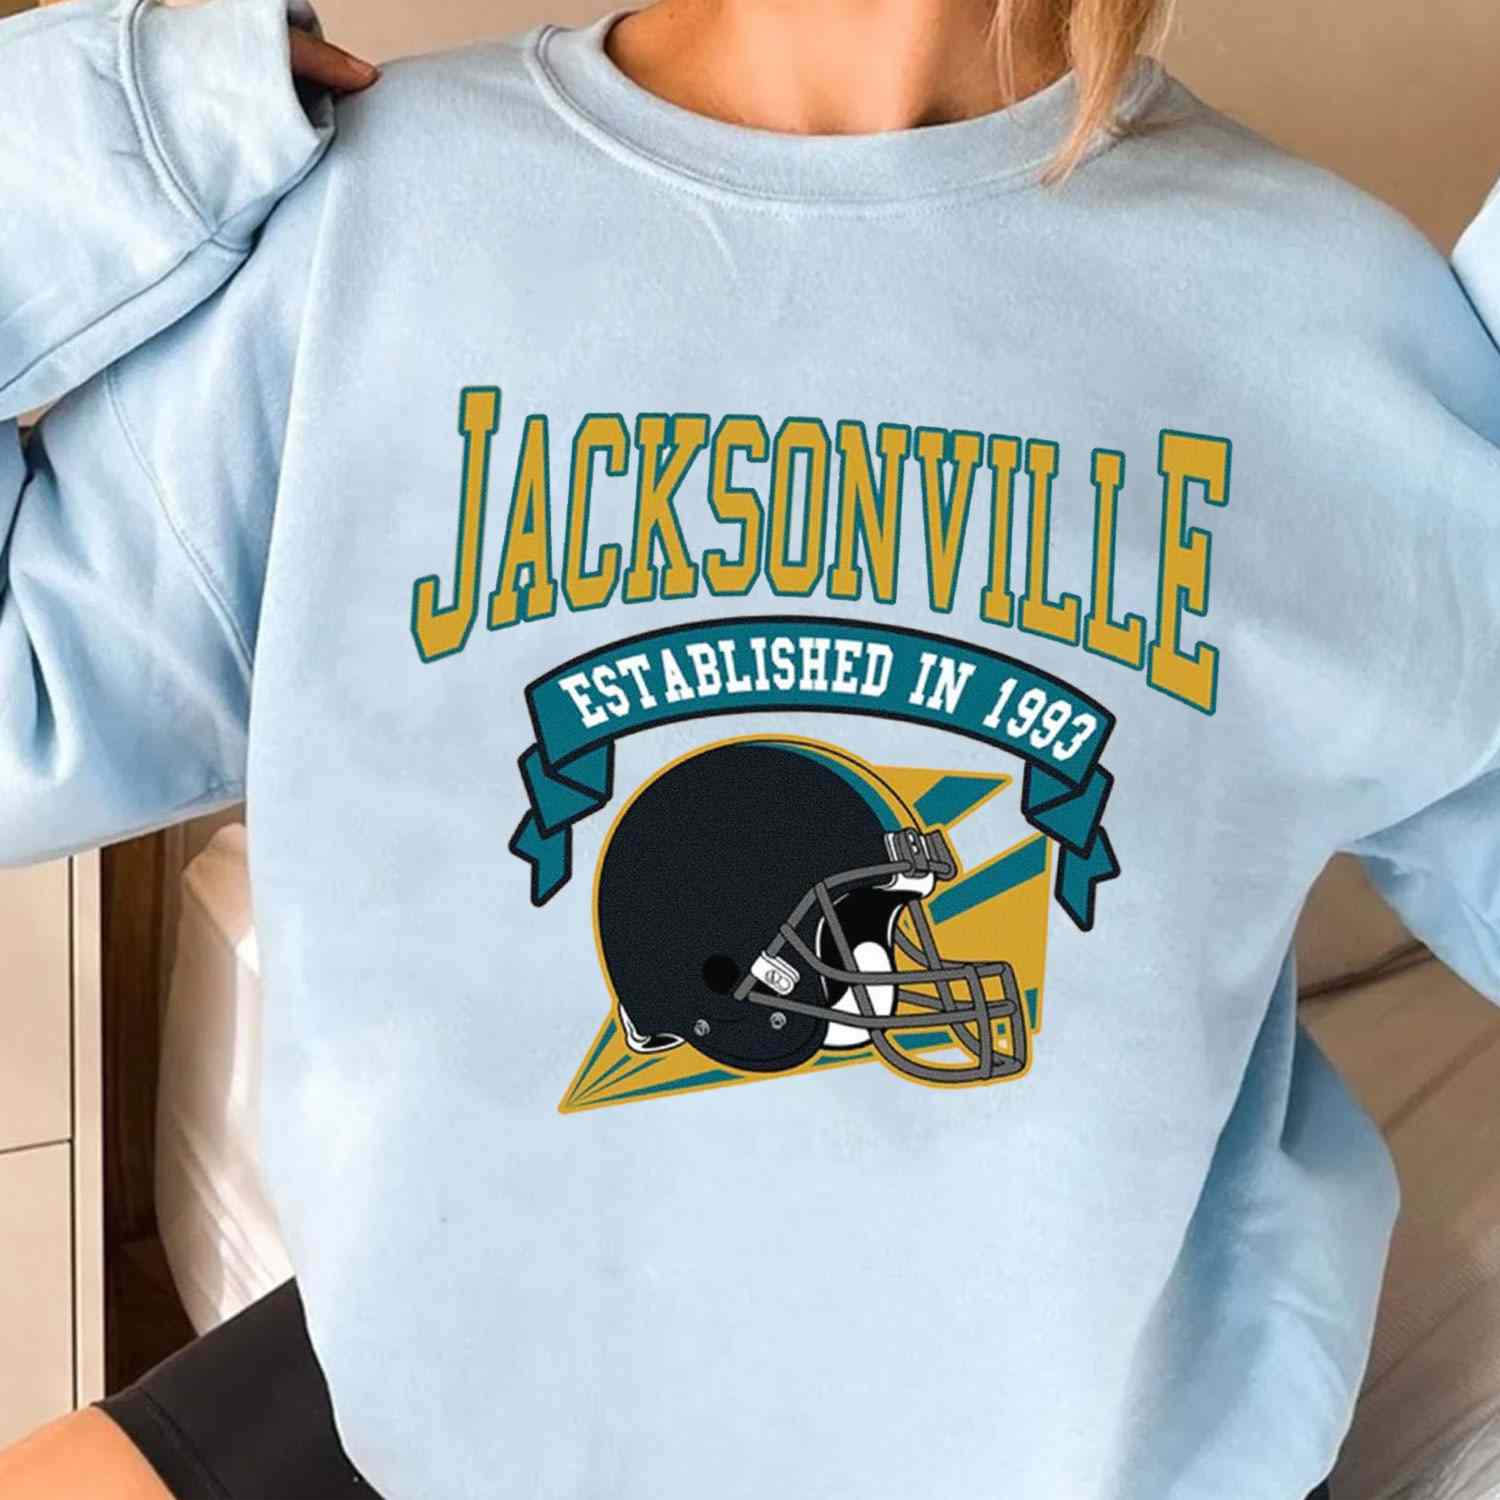 Vintage Football Team Jacksonville Jaguars Established In 1993 T-Shirt